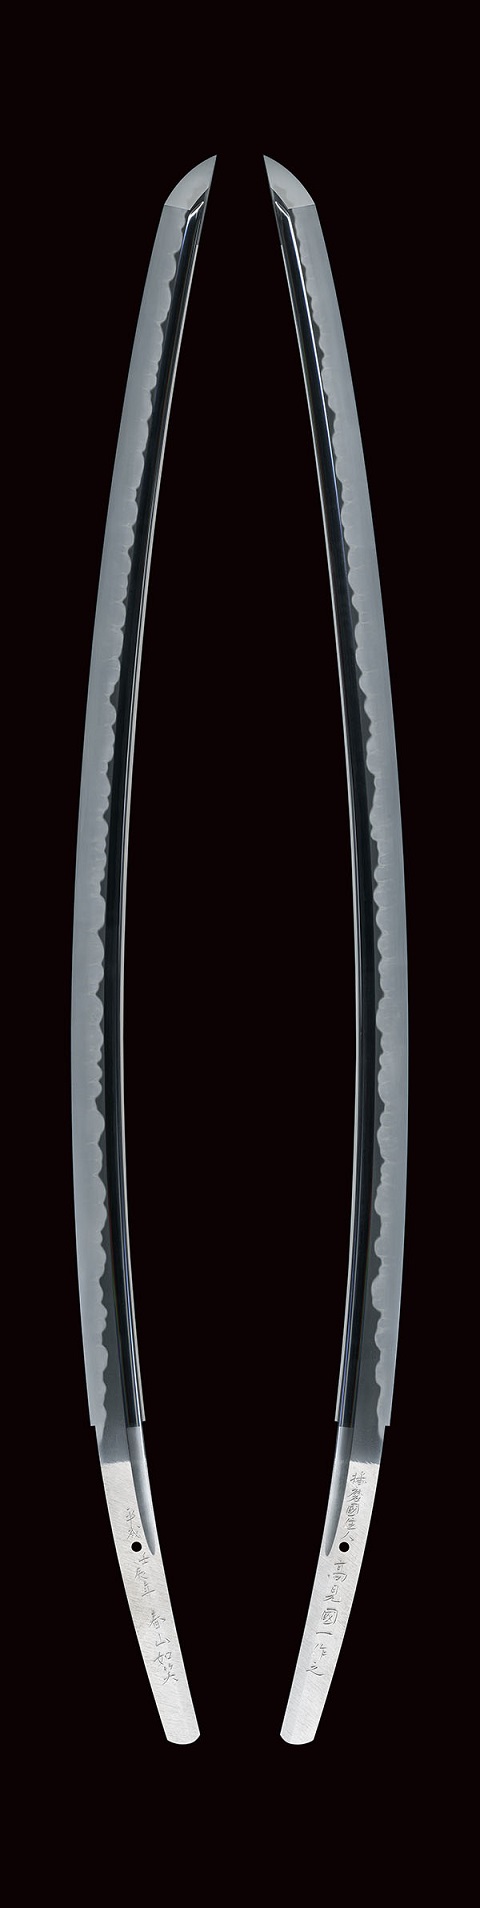 the competiton sword for 2012_syunzanjyosyo